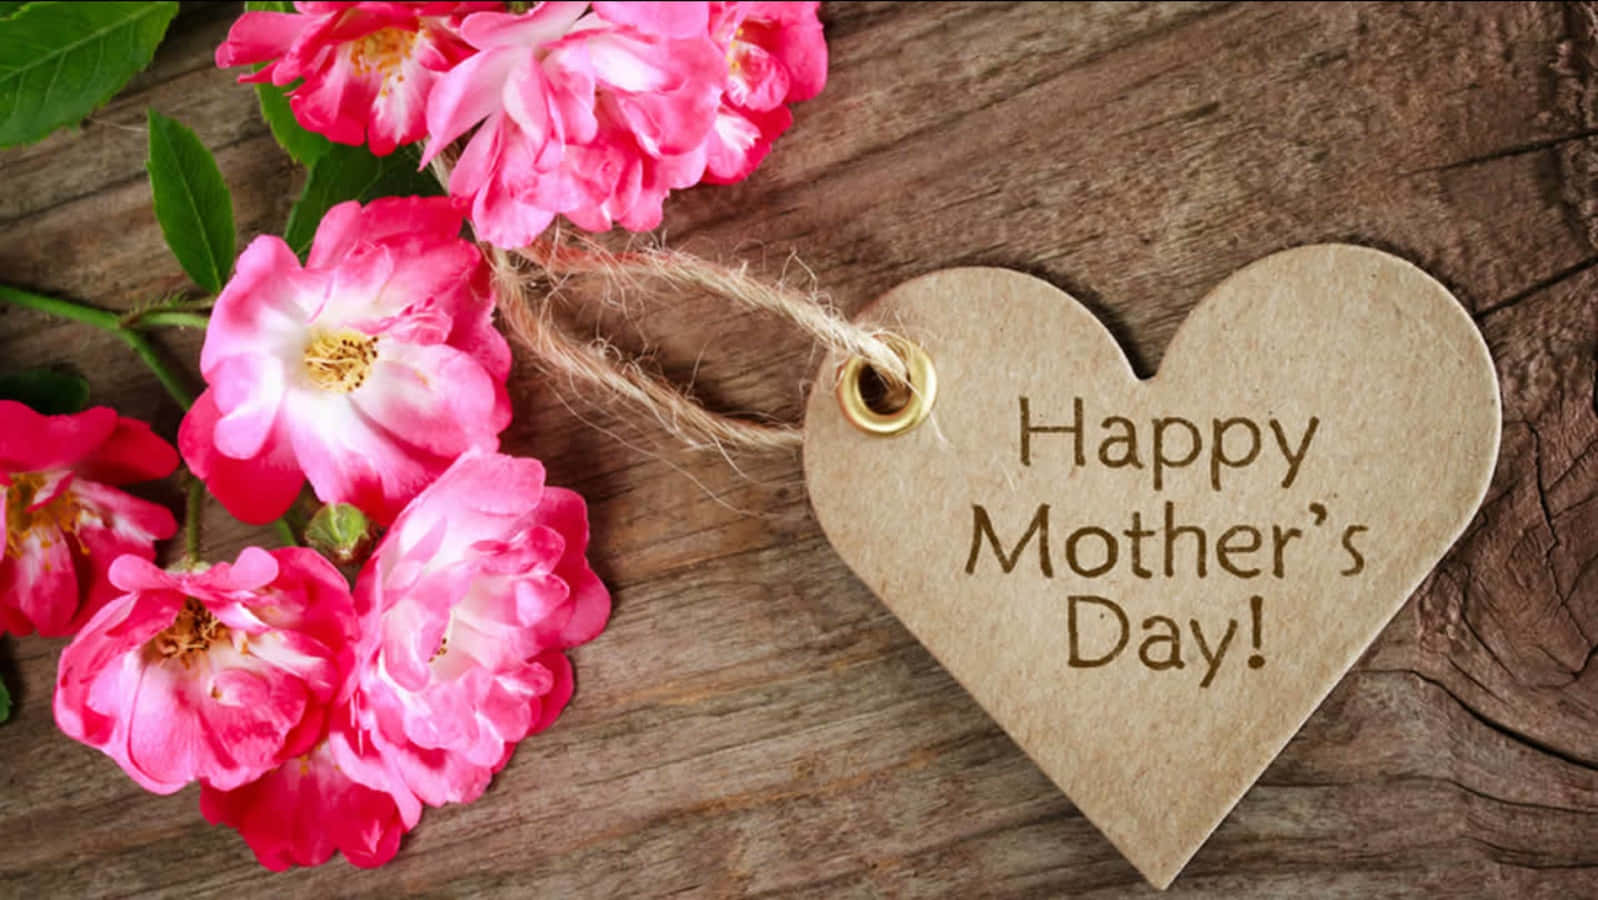 Celebraeste Feliz Día De Las Madres Enviando Tu Amor Y Deseos A La Mujer Especial En Tu Vida.